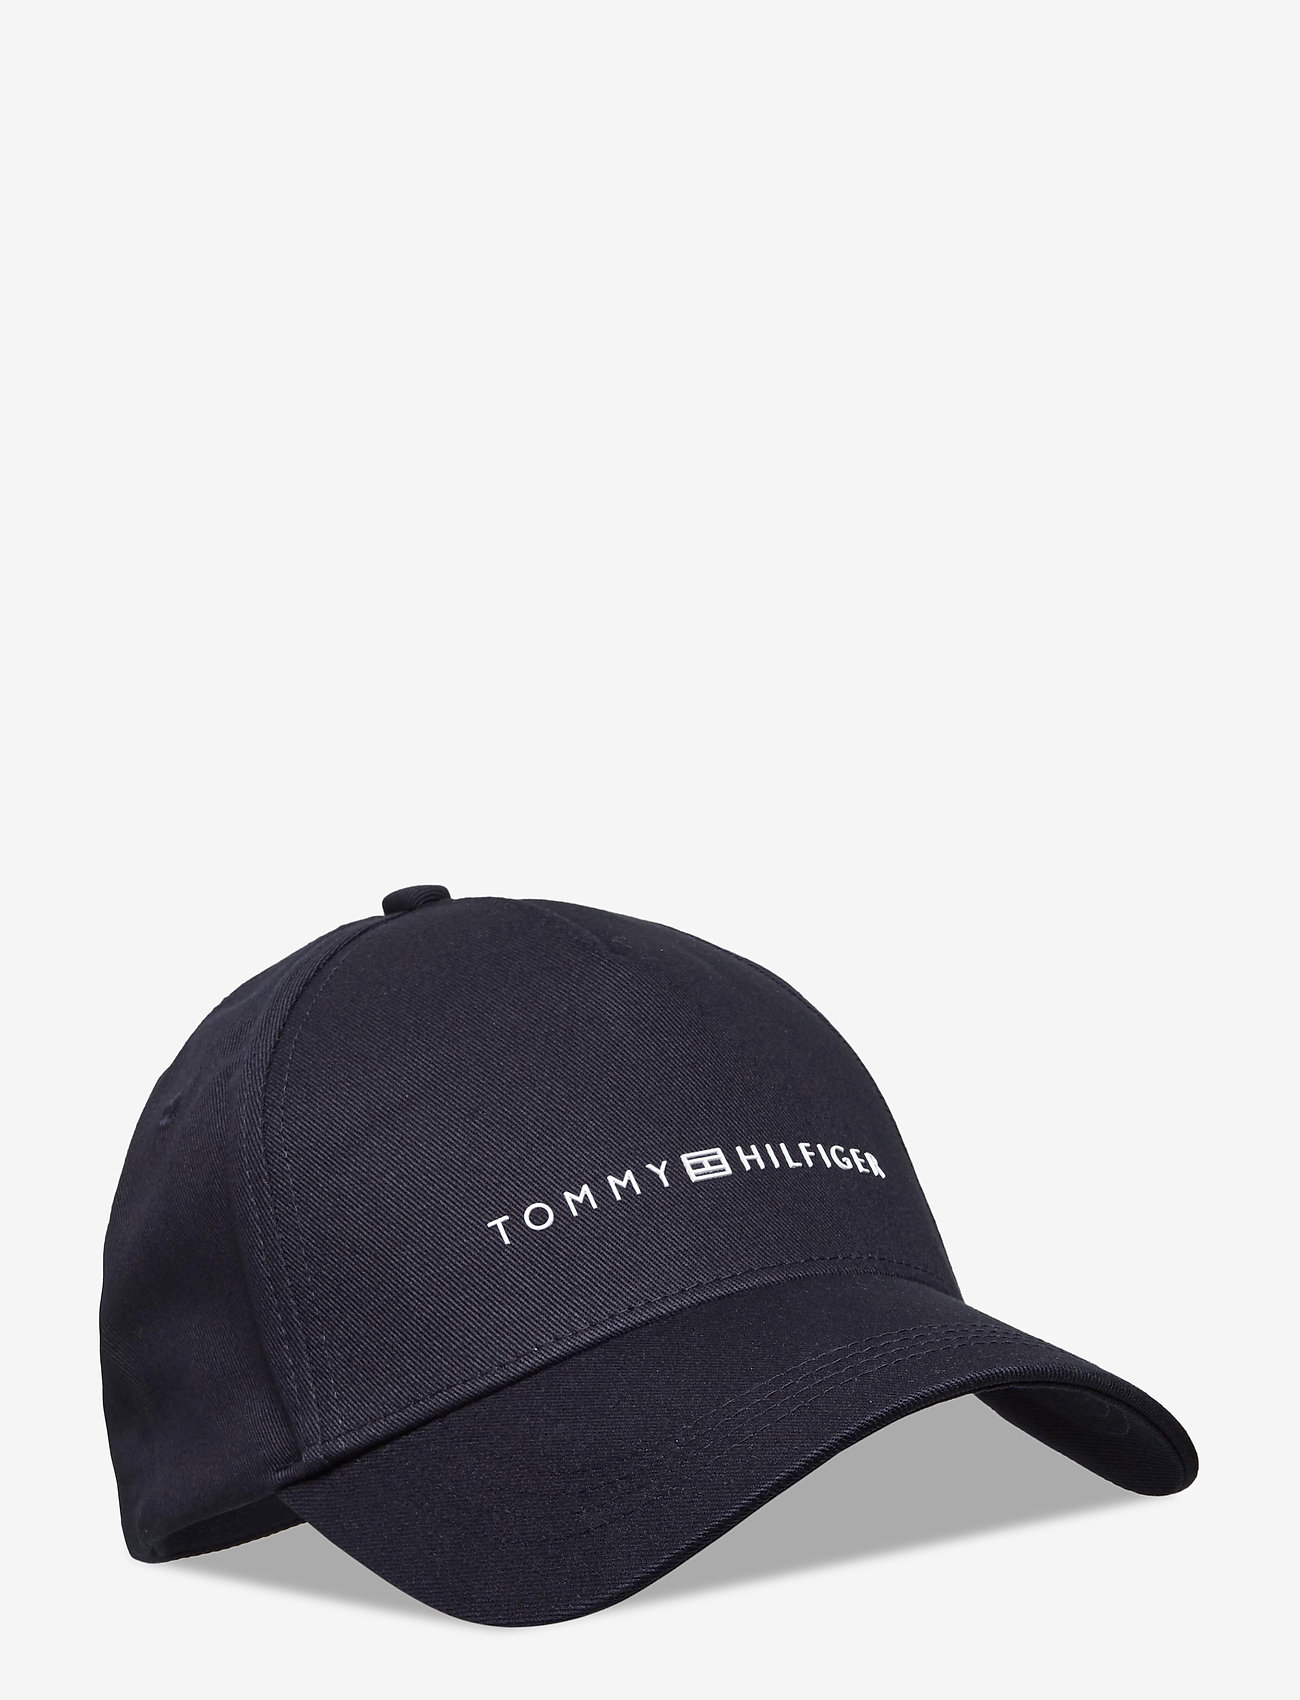 tommy hilfiger uptown cap